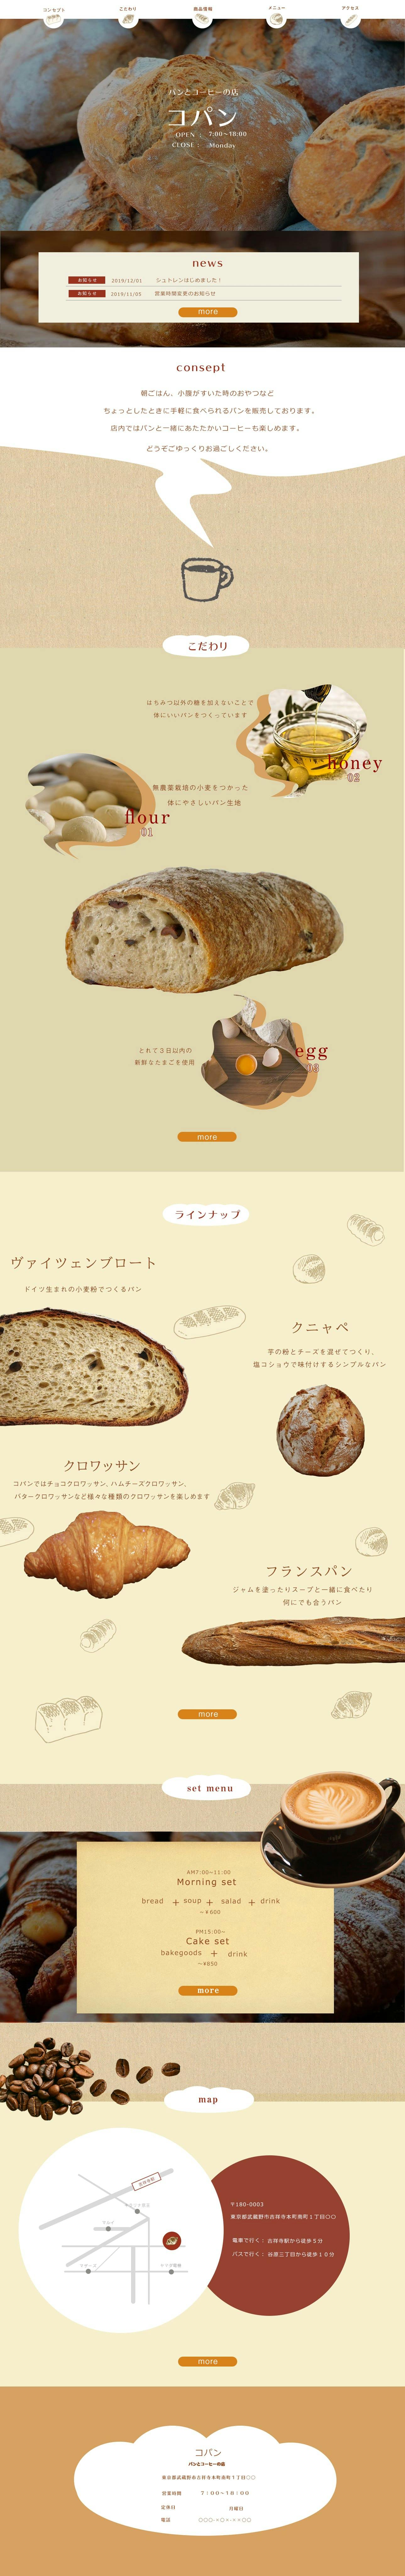 【2019.12】パン屋のサイト01-1